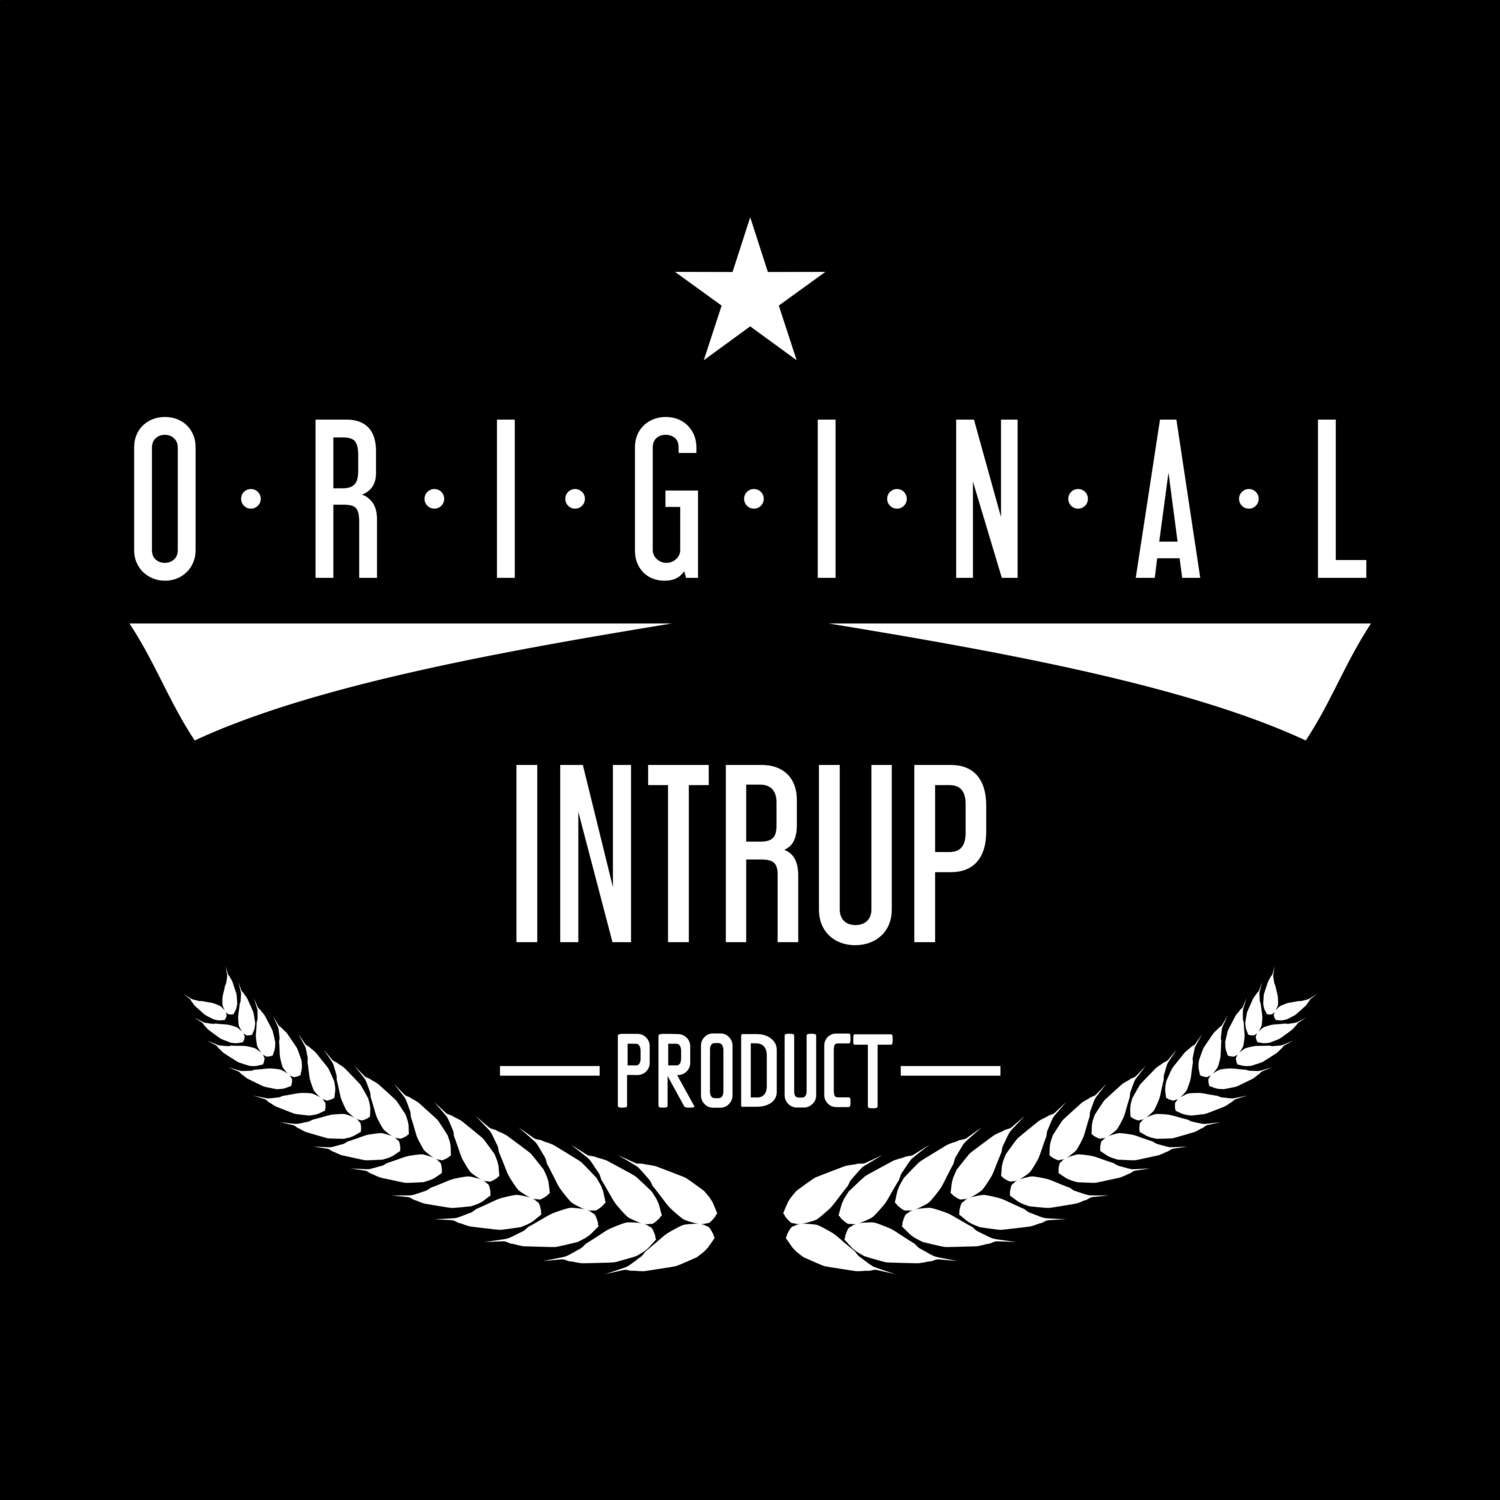 Intrup T-Shirt »Original Product«